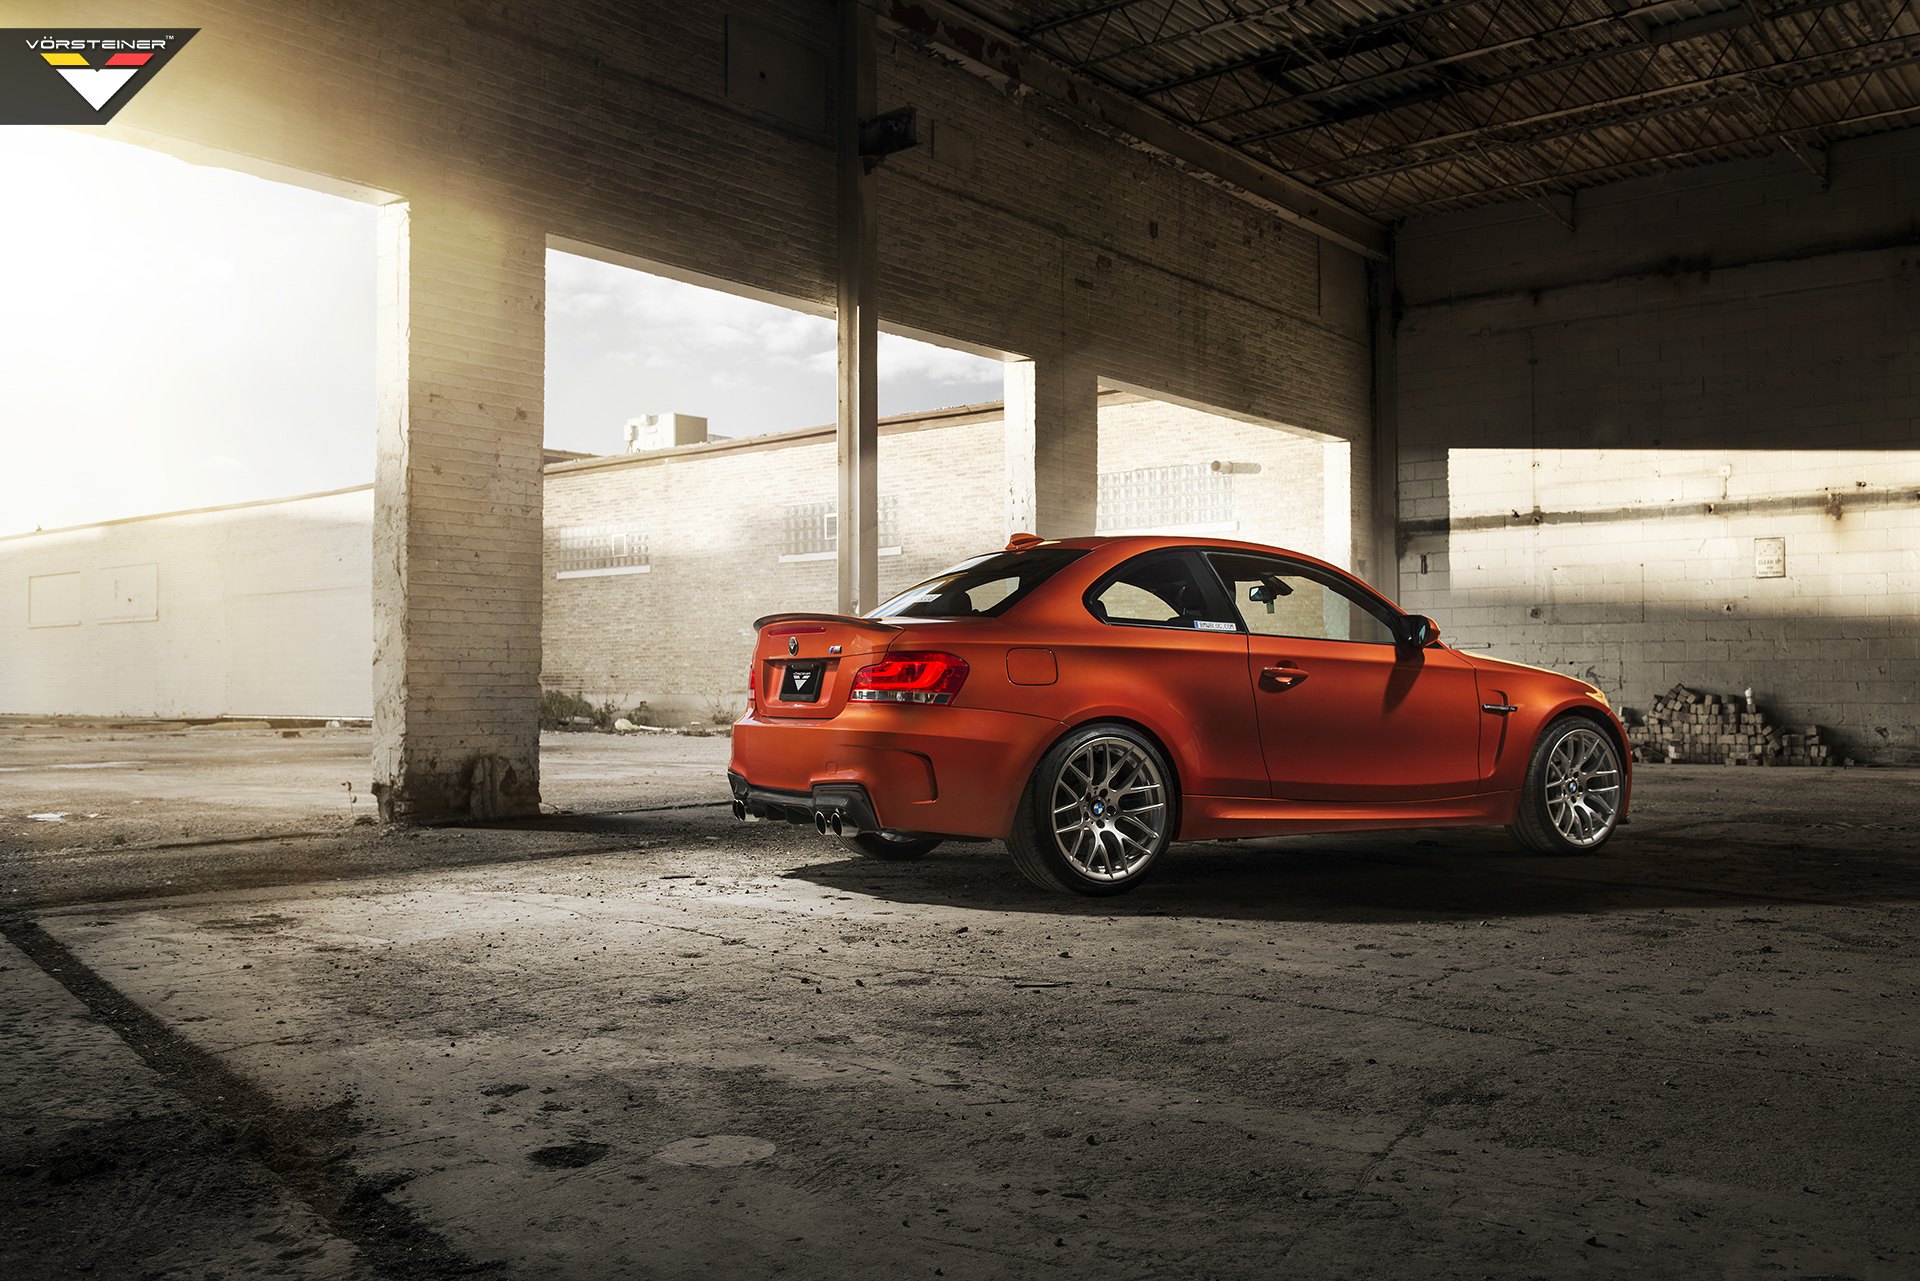 Orange BMW 1-Series with Rear Lip Spoiler - Photo by Vorstiner